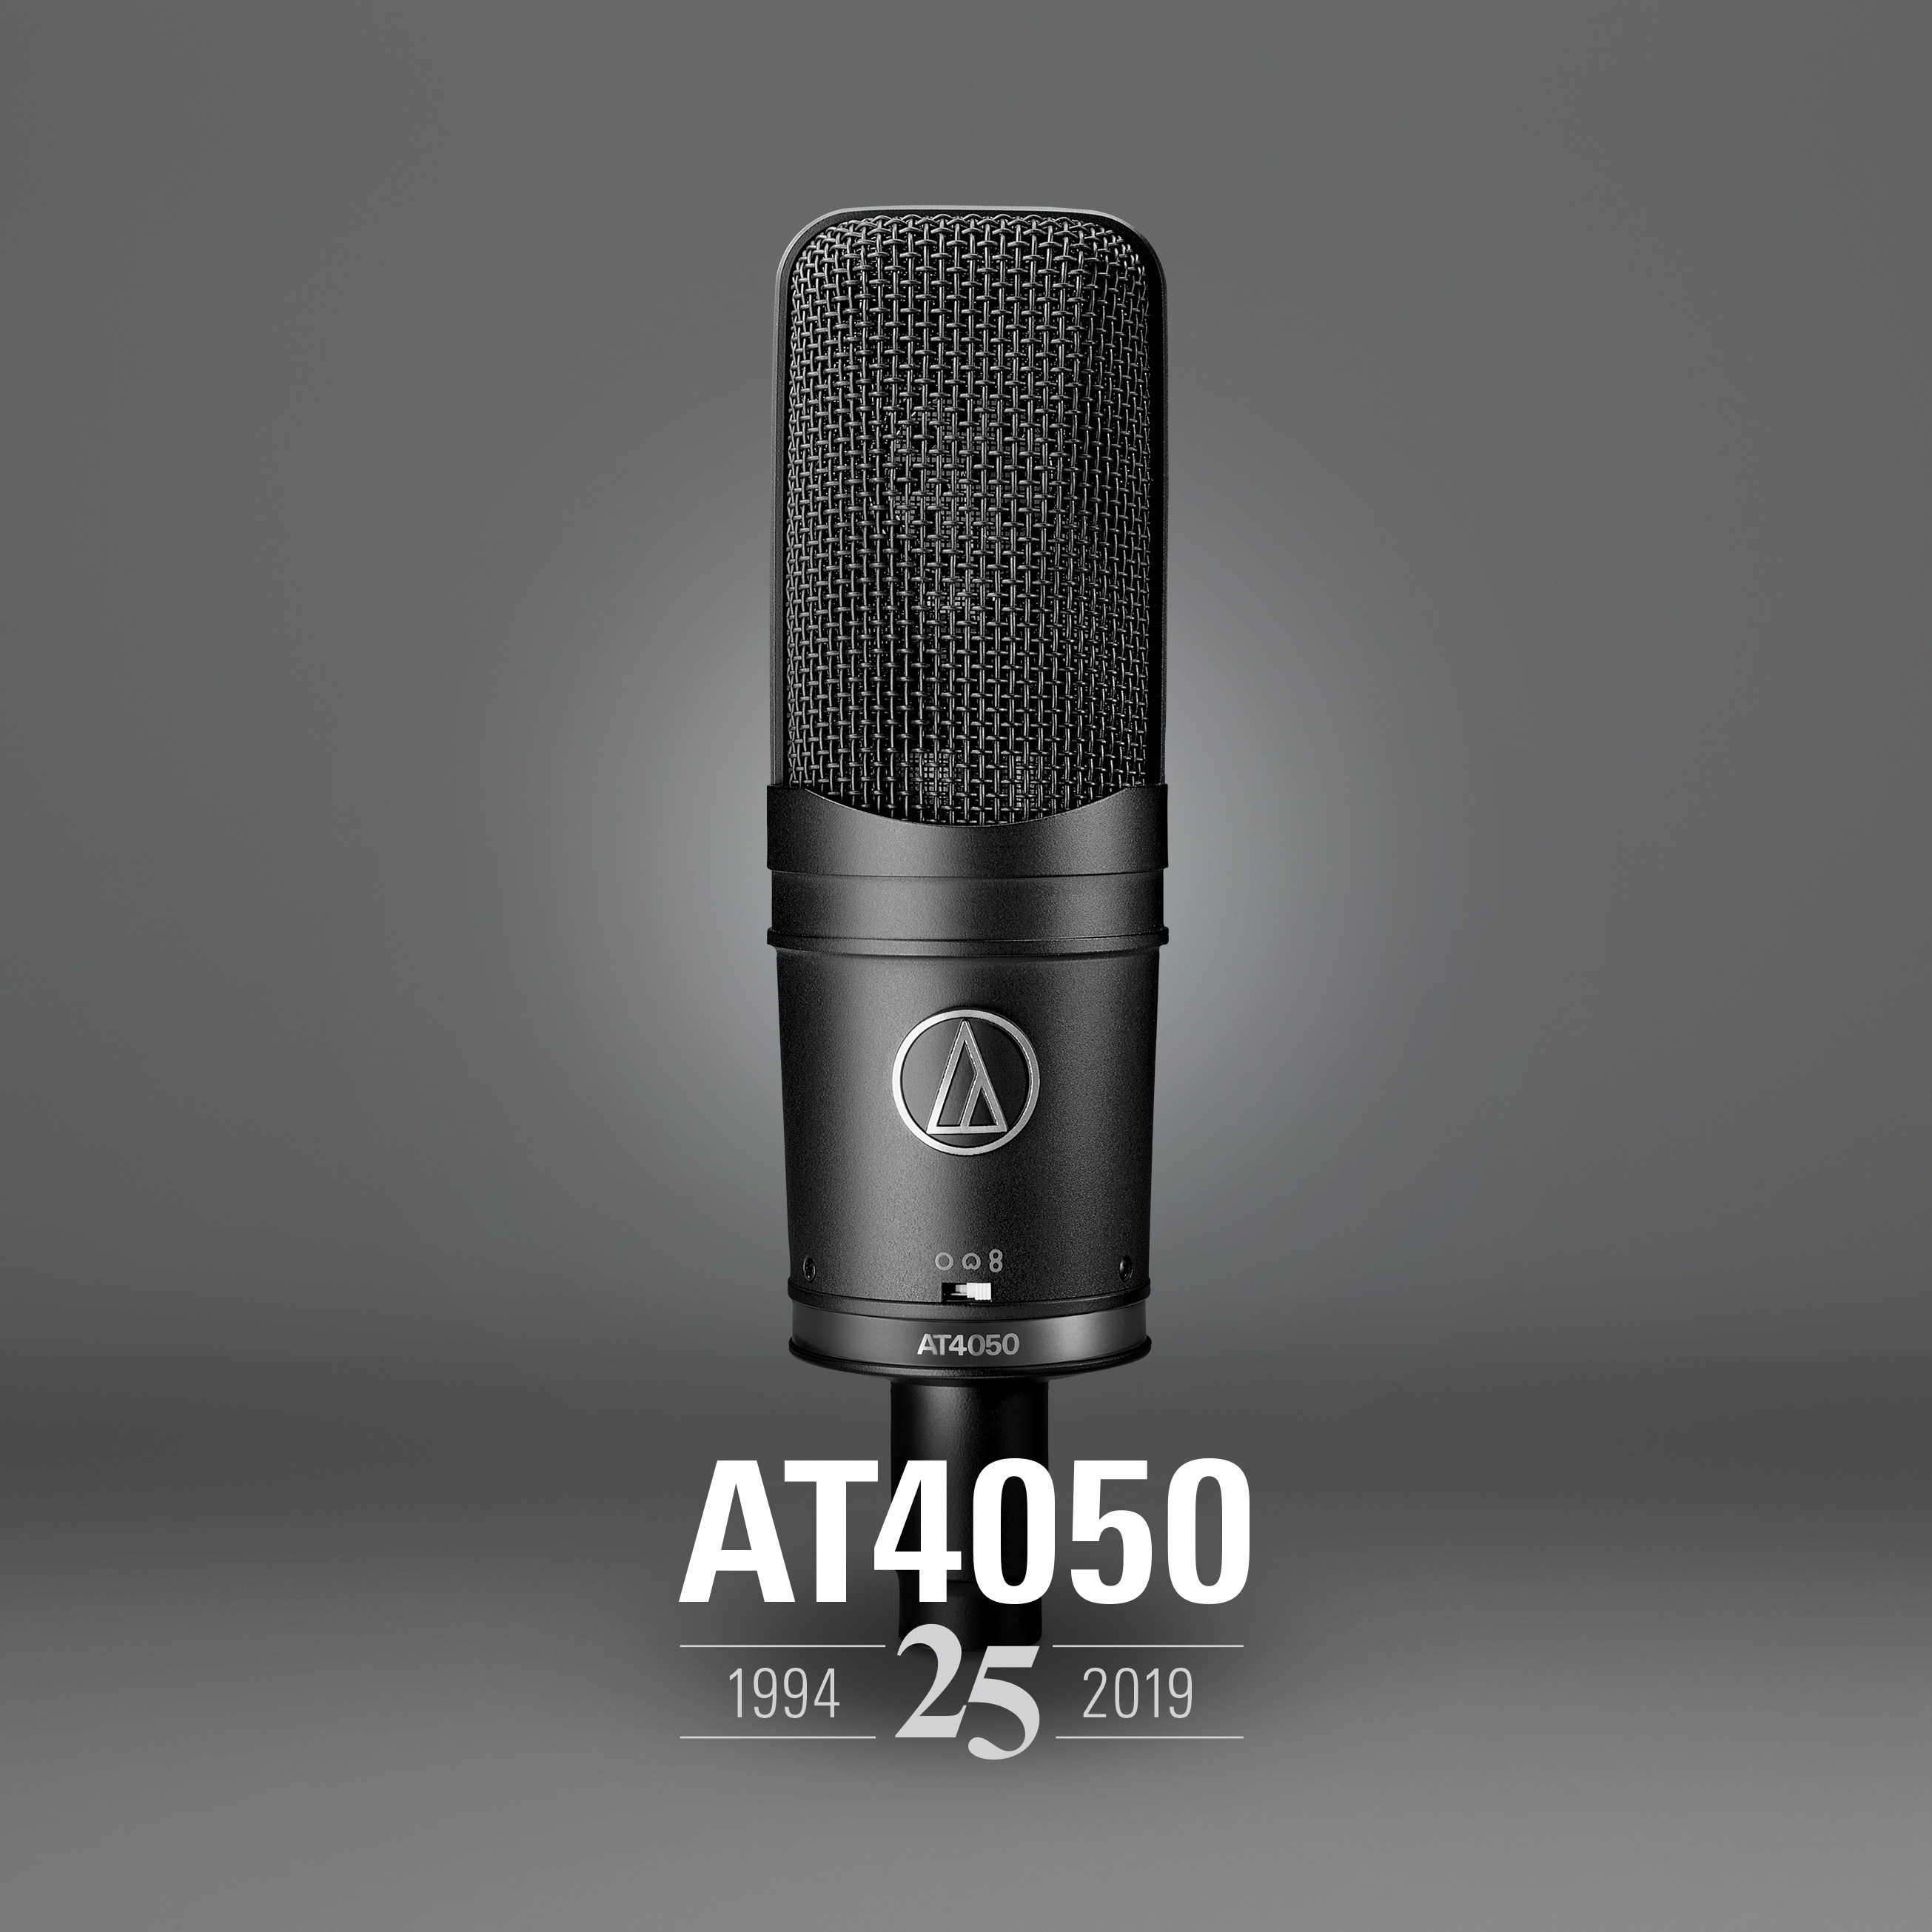 Audio-Technica Celebrates 25th Anniversary of AT4050 Multi-pattern Condenser Microphone